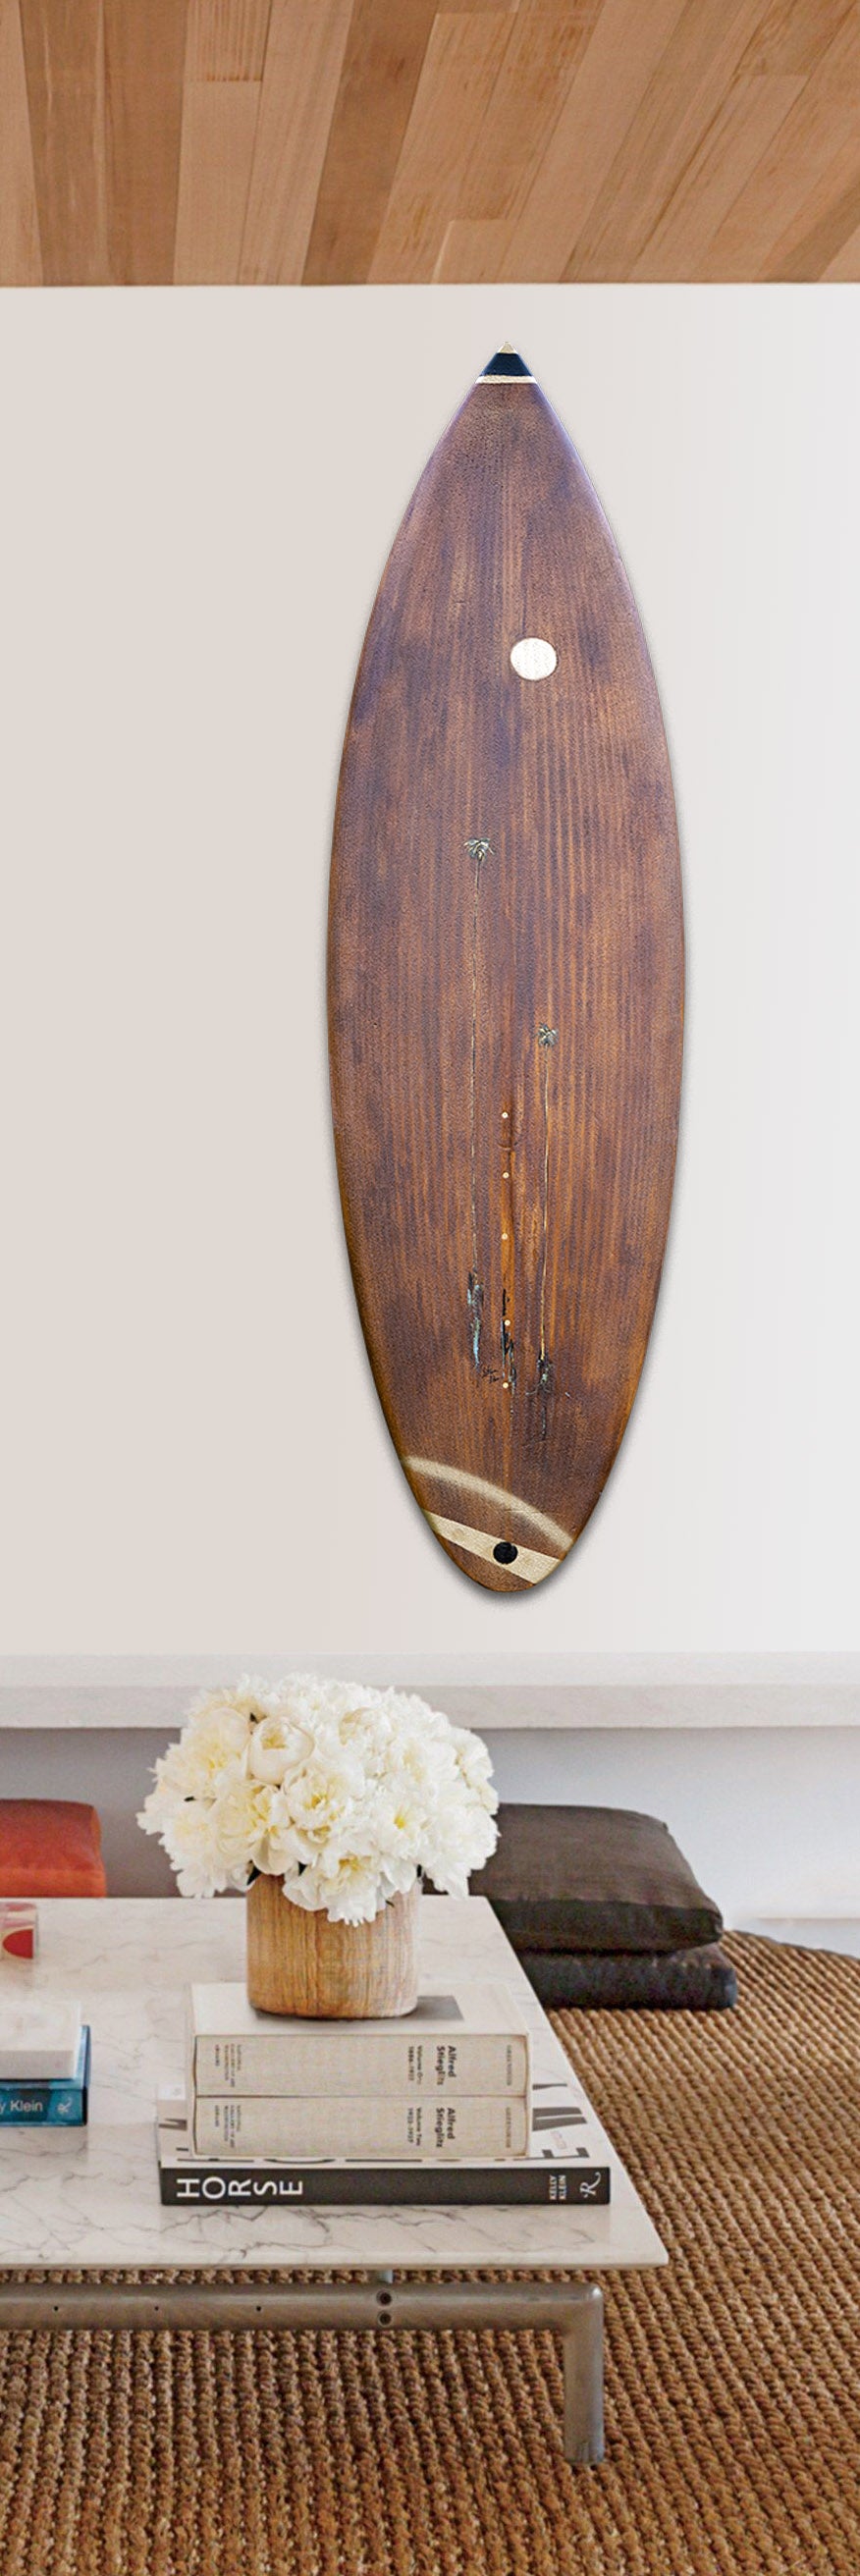 Monarch Surfboard